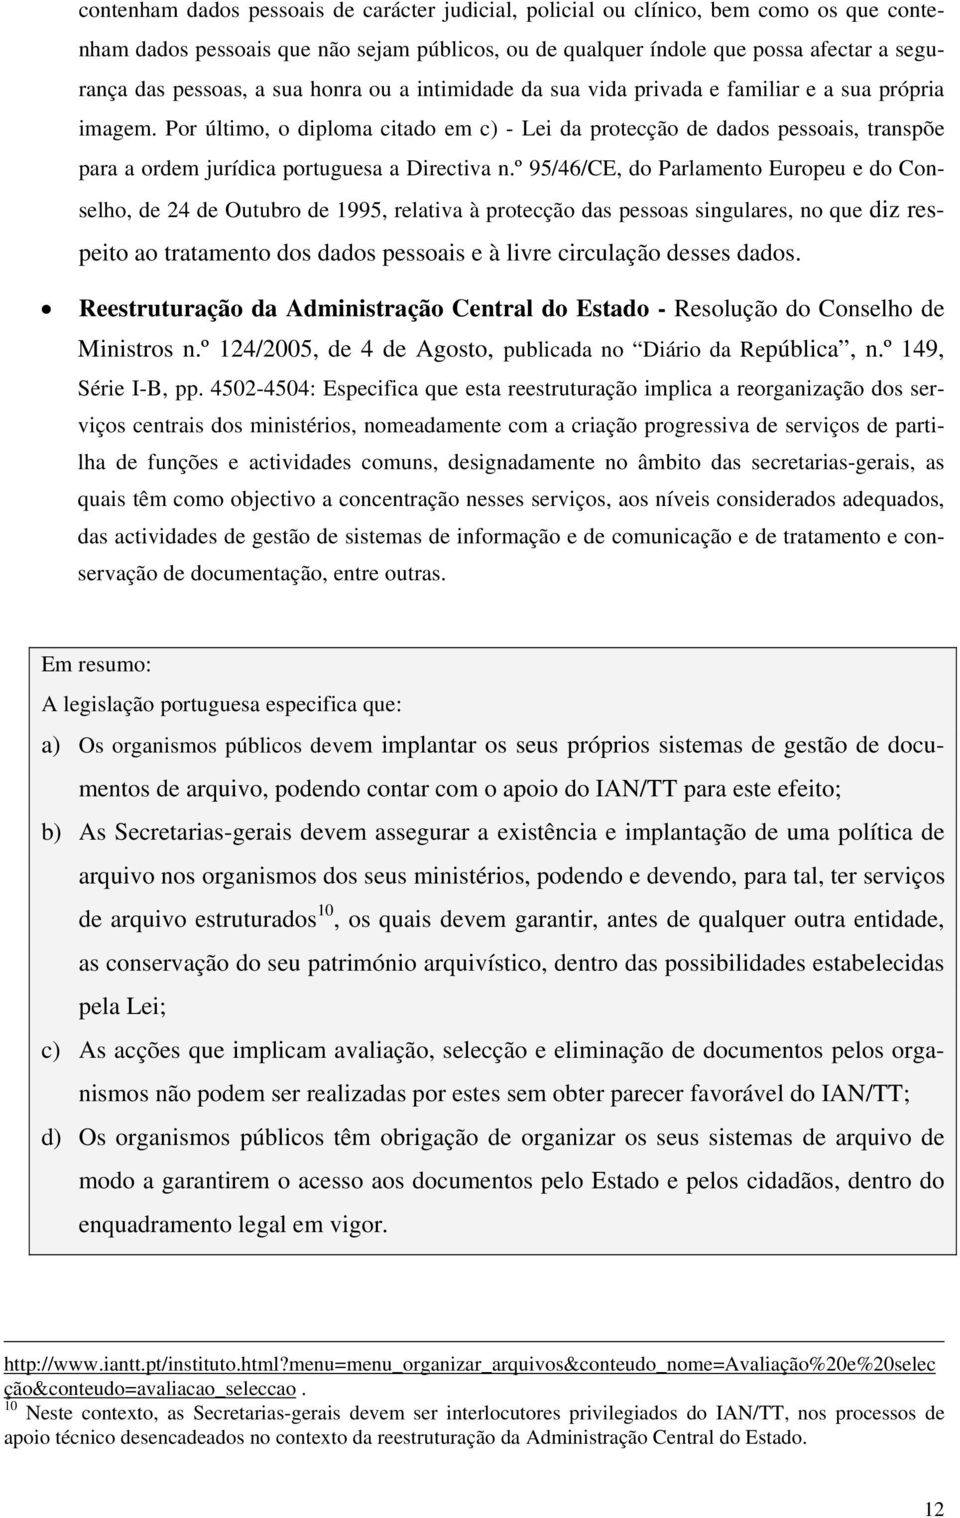 Por último, o diploma citado em c) - Lei da protecção de dados pessoais, transpõe para a ordem jurídica portuguesa a Directiva n.